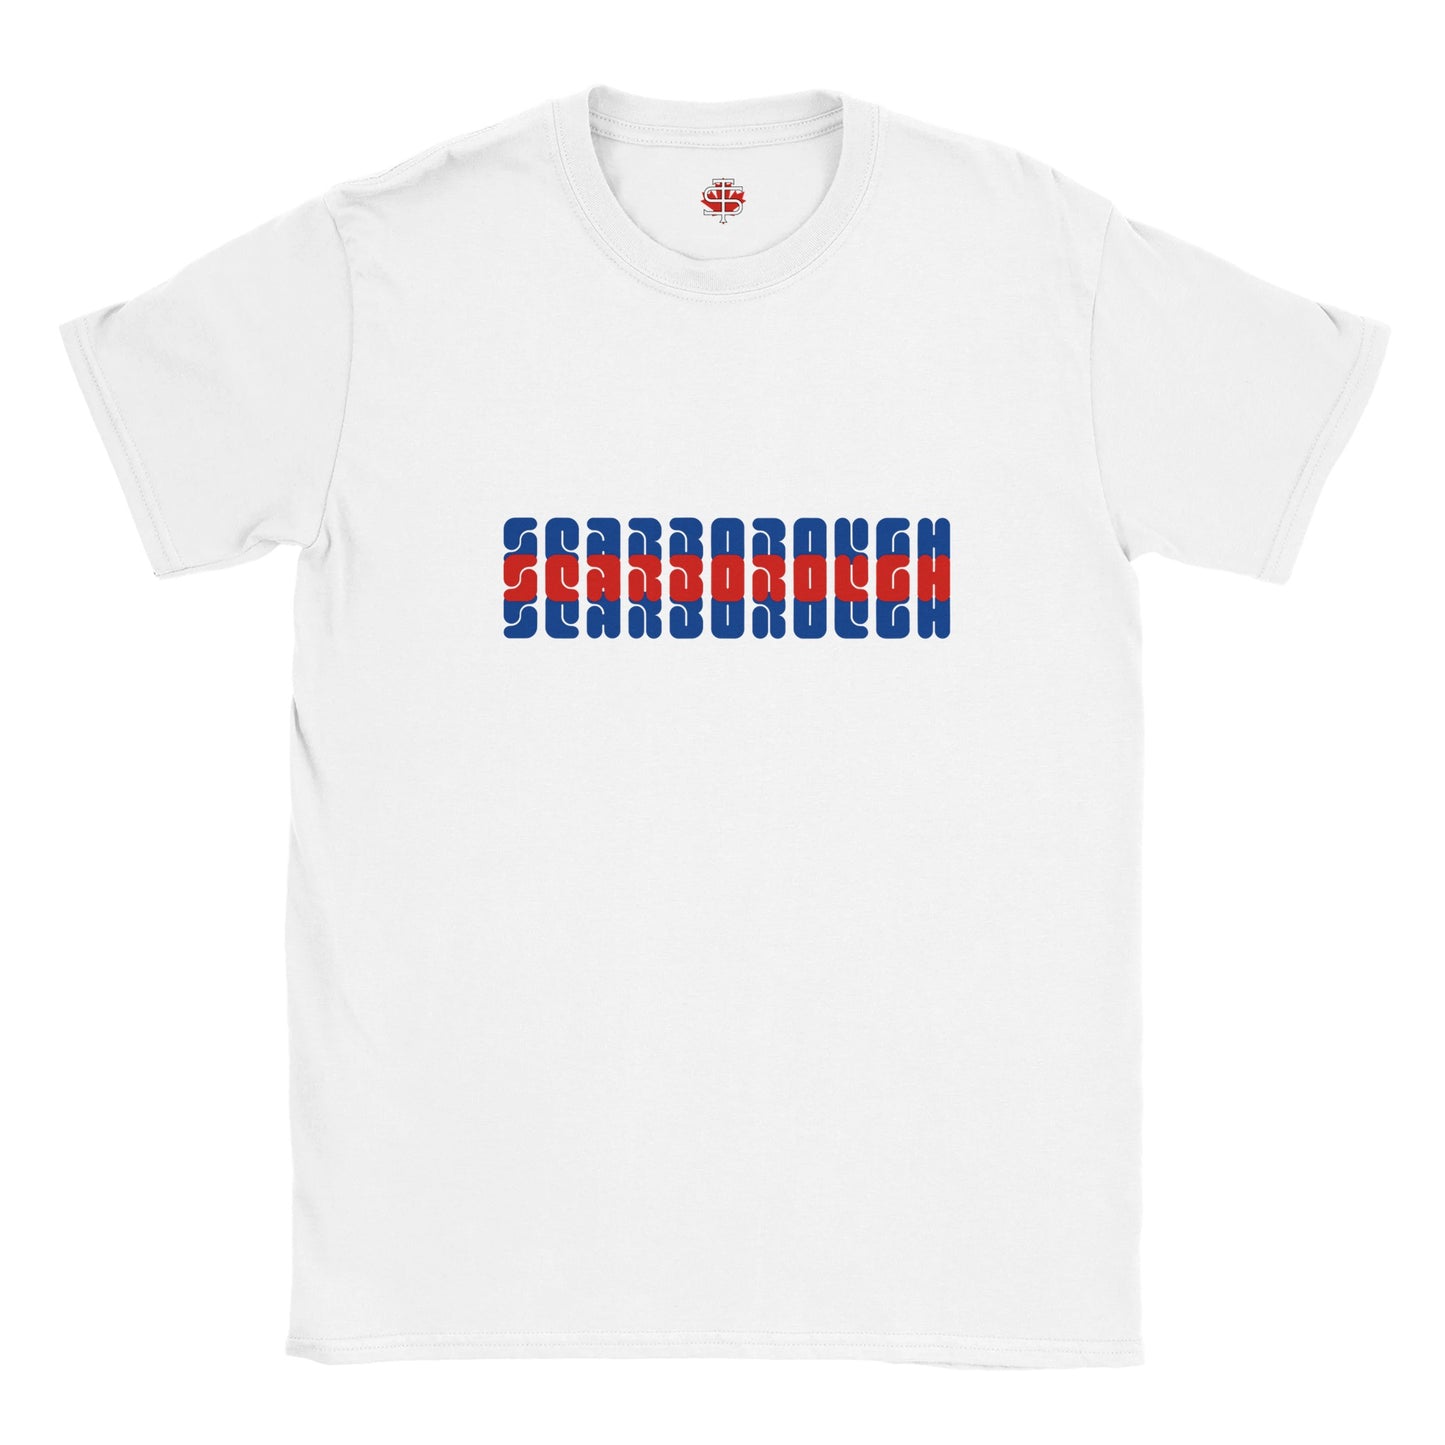 "Retro Scarborough" Classic Unisex Crewneck T-shirt